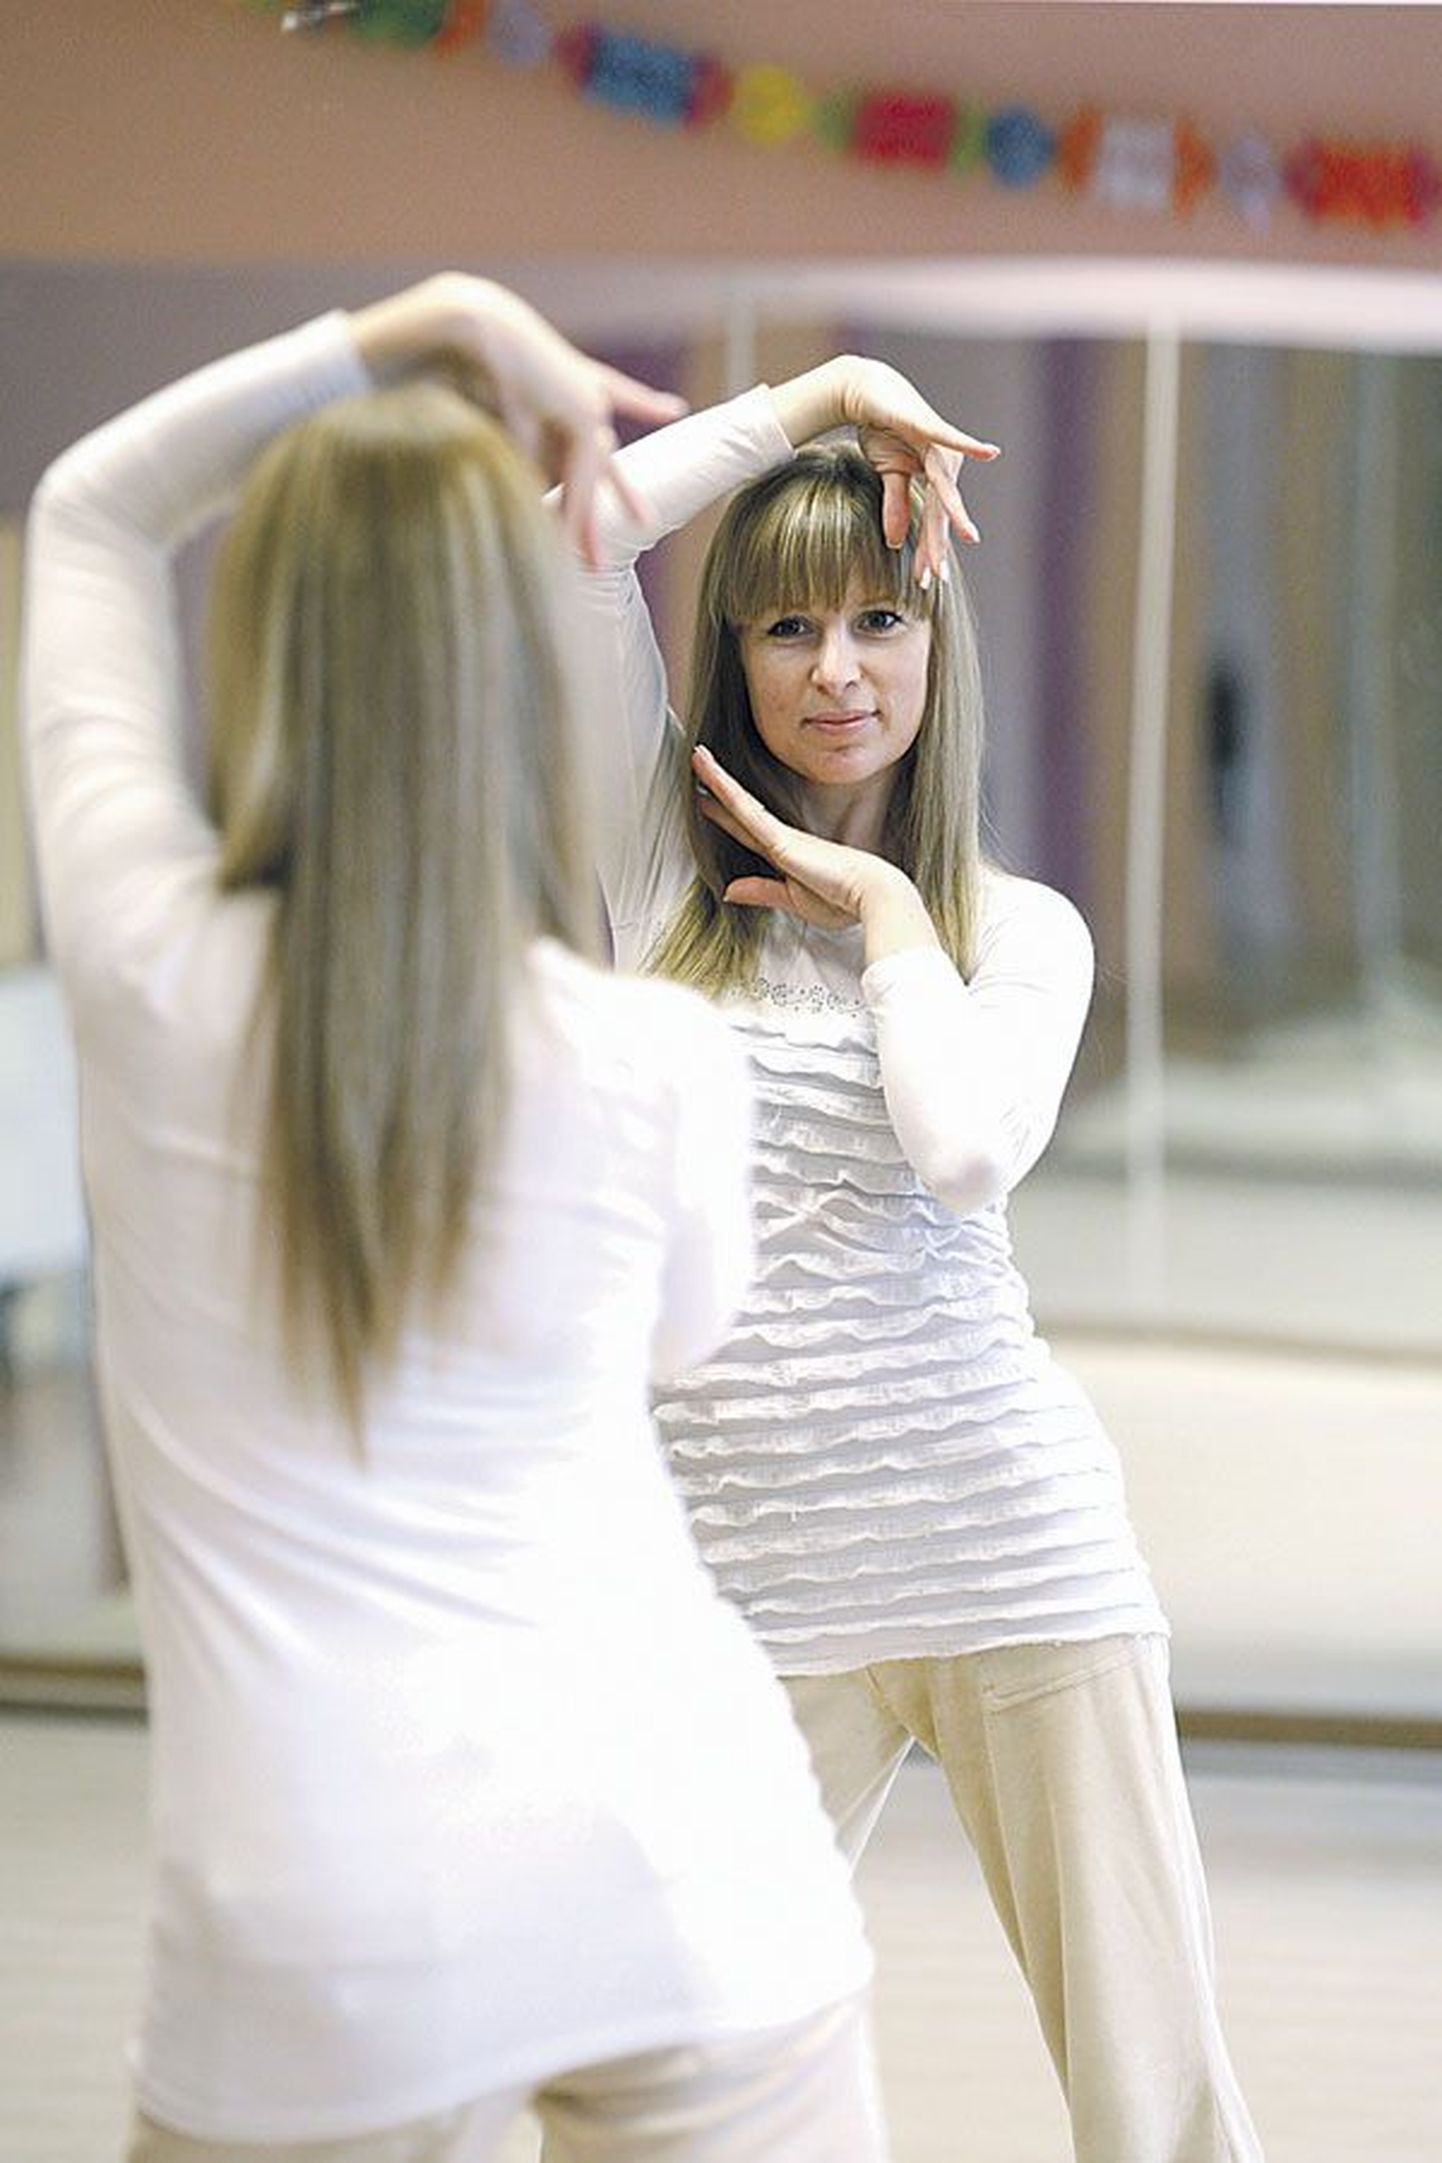 Большая часть времени Елены Фрунзе посвящена танцевальной школе. Рабочие дни нередко затягиваются до восьми часов вечера, а в выходные она ездит с учениками на конкурсы.